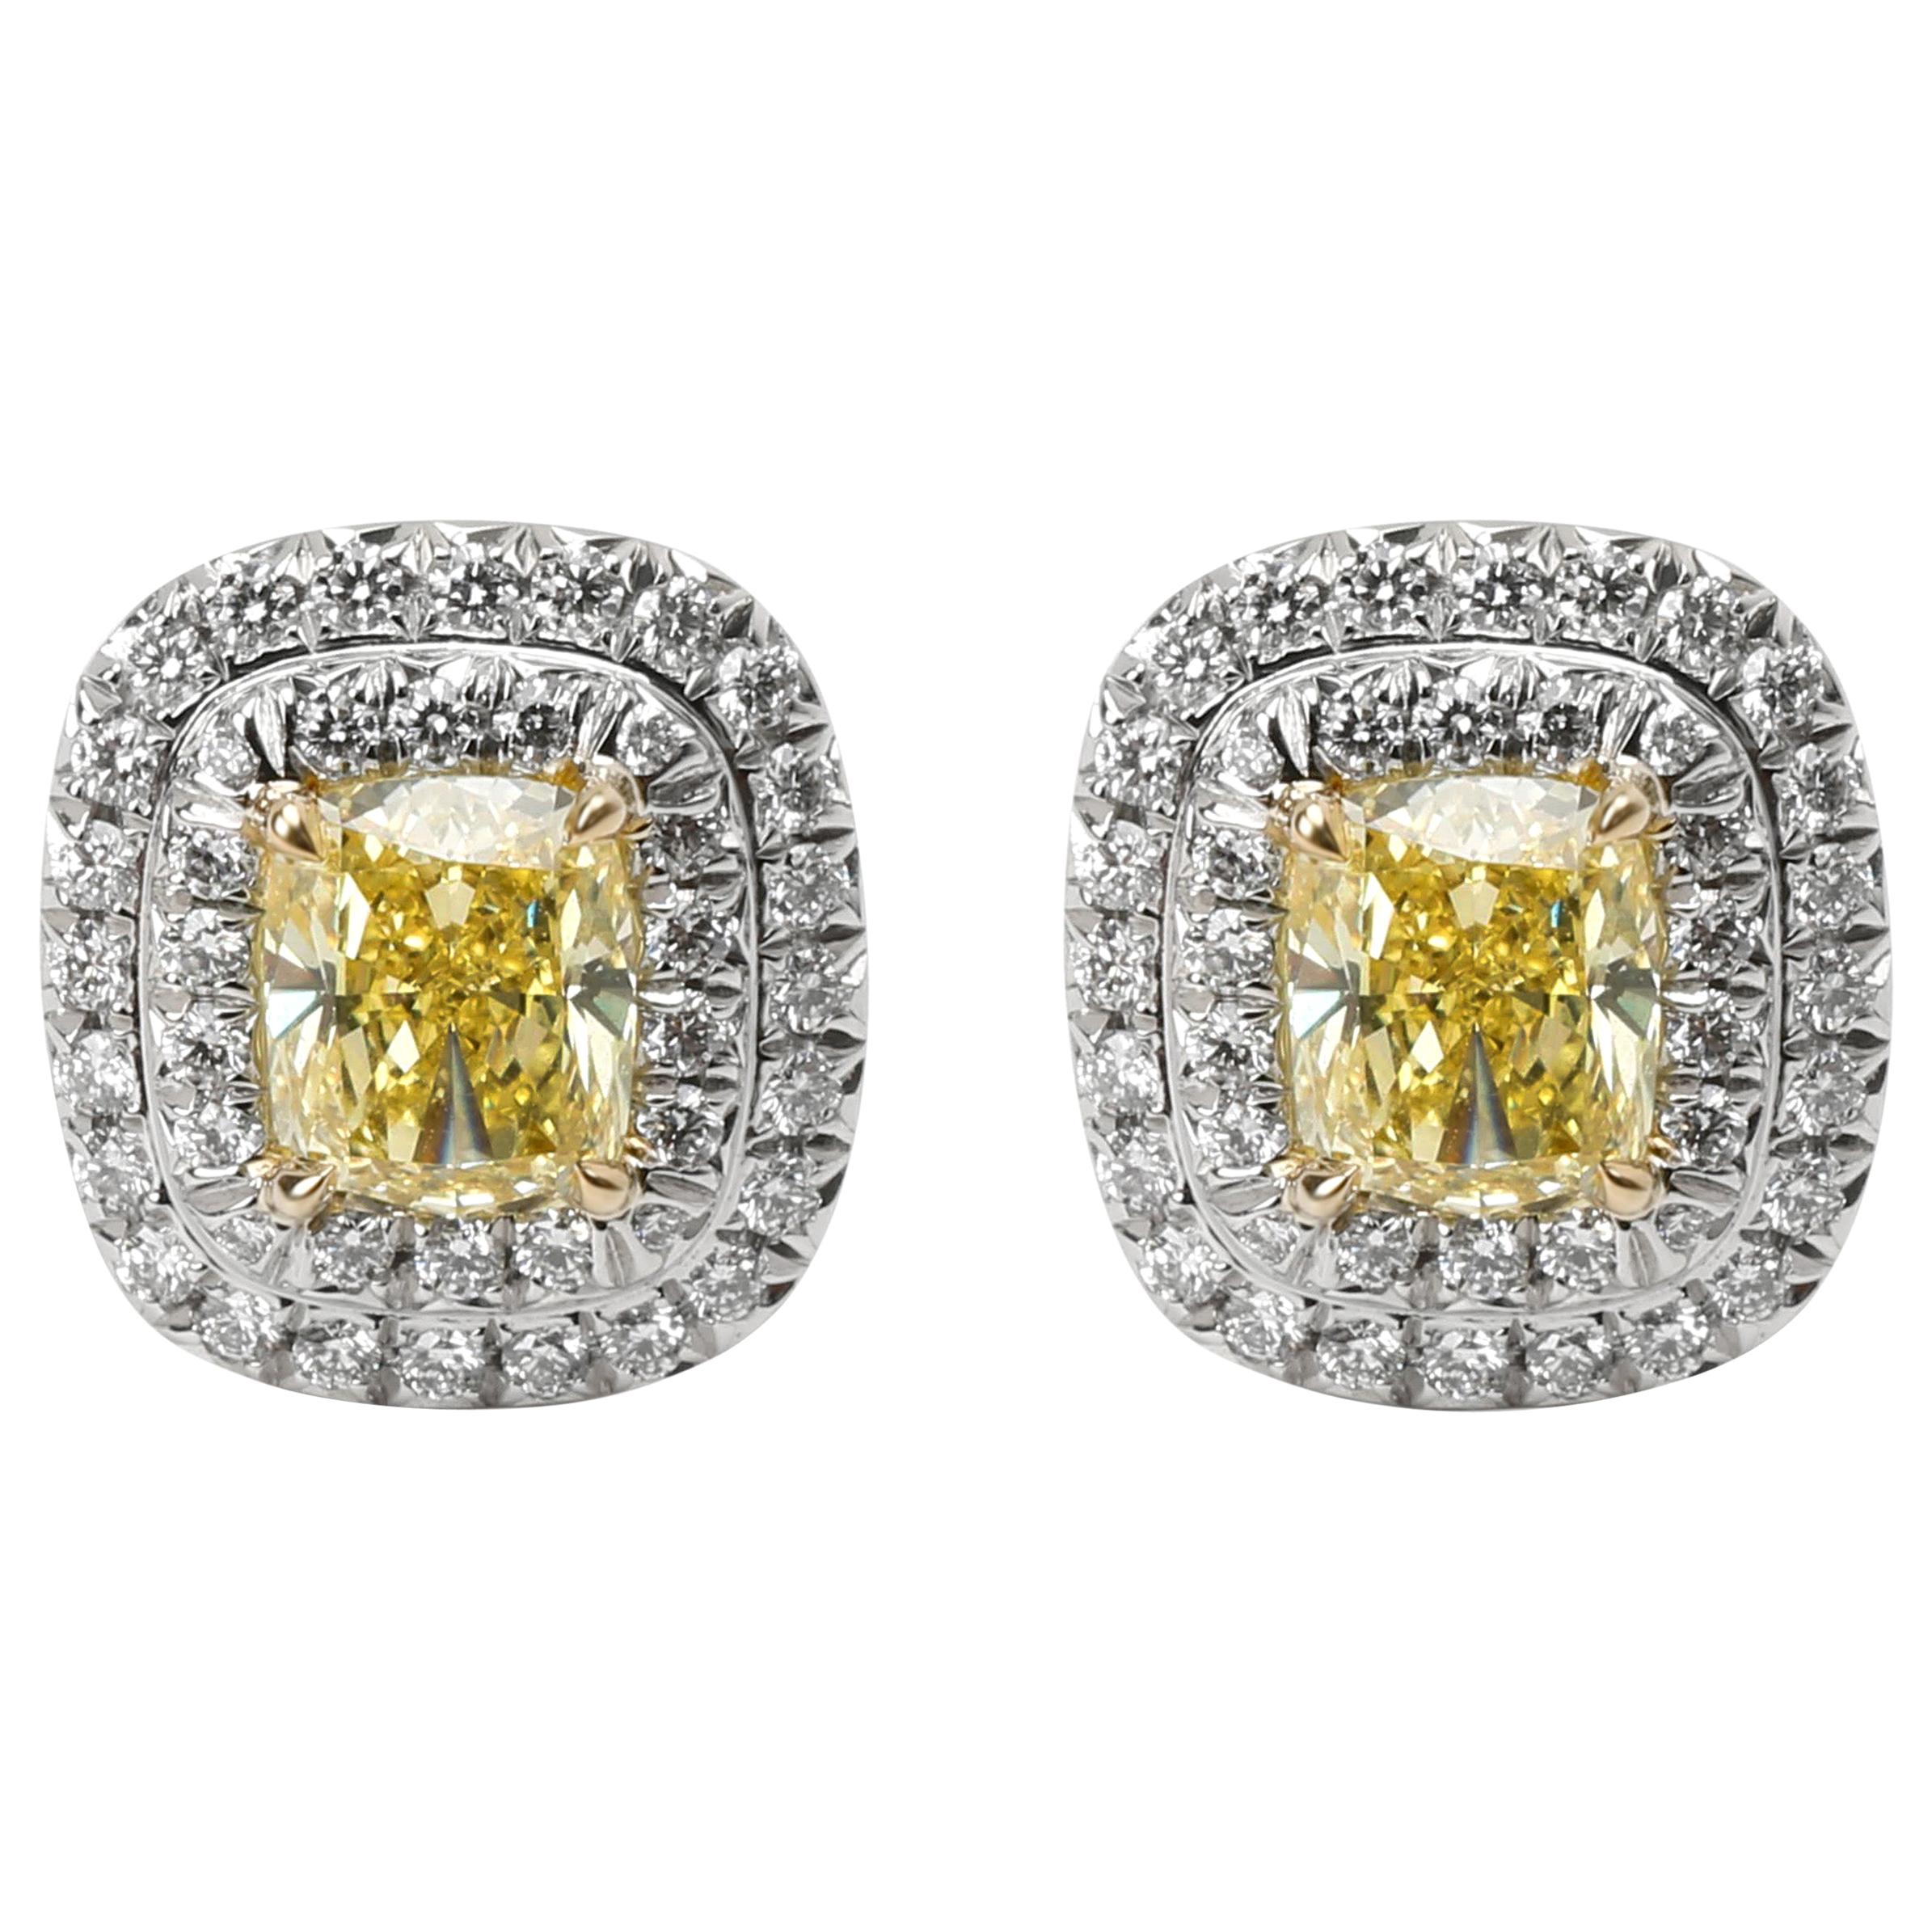 Tiffany & Co. Tiffany Soleste Diamond Earrings in Platinum Fancy Yellow